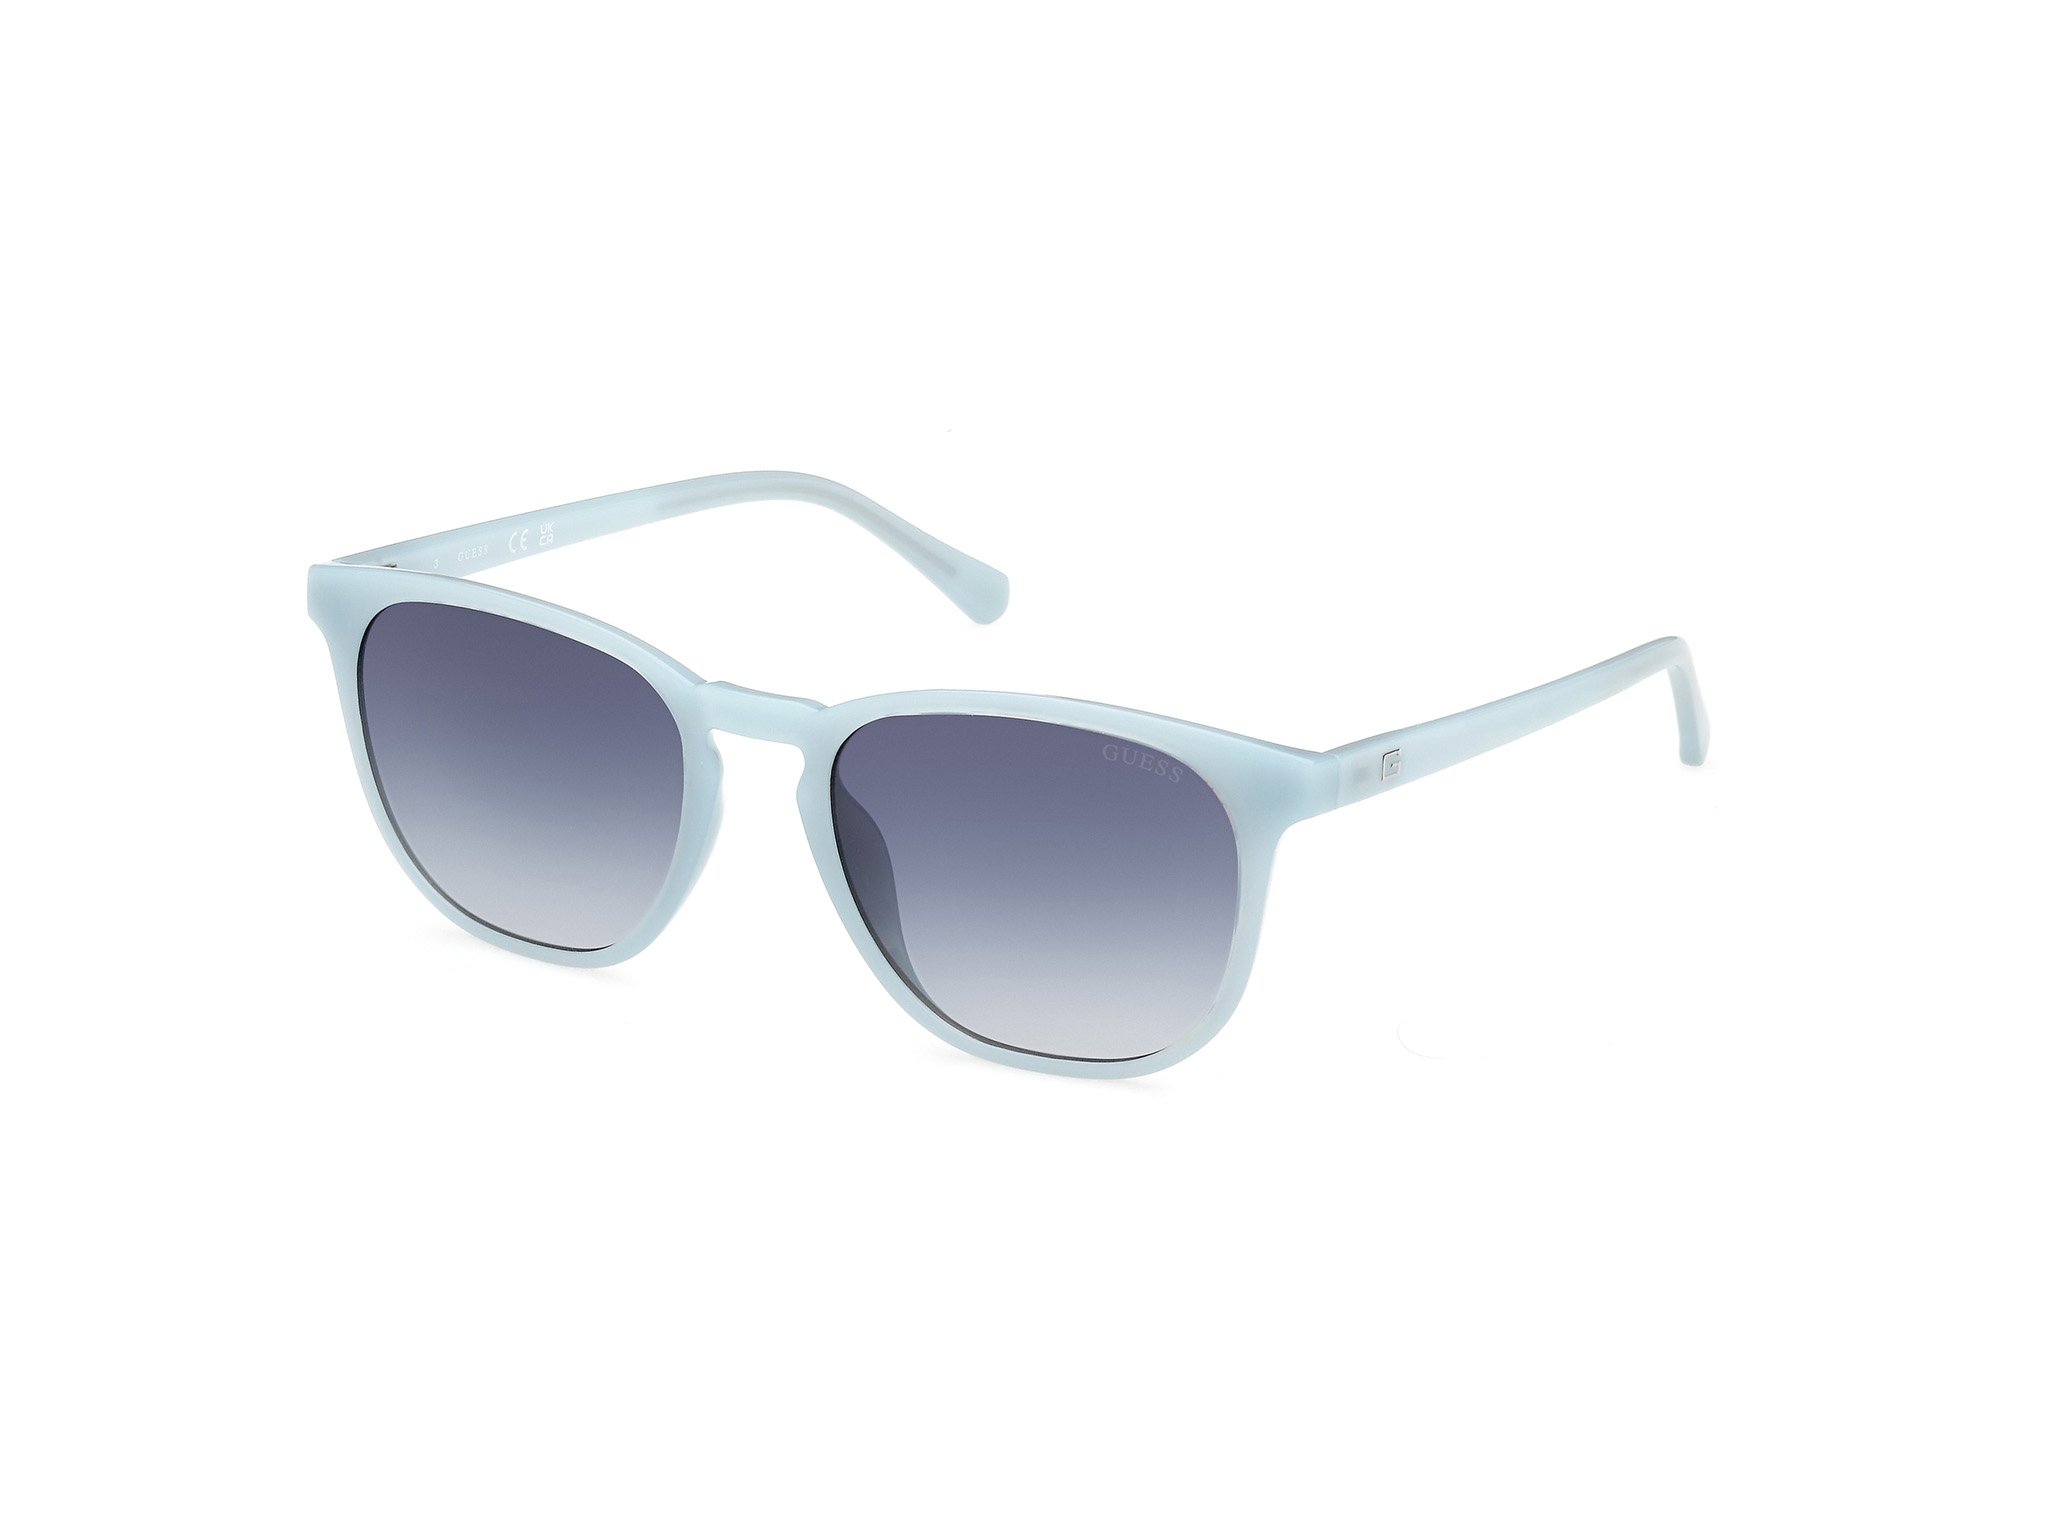 Das Bild zeigt die Sonnenbrille GU00061 84W von der Marke Guess in Hellblau.